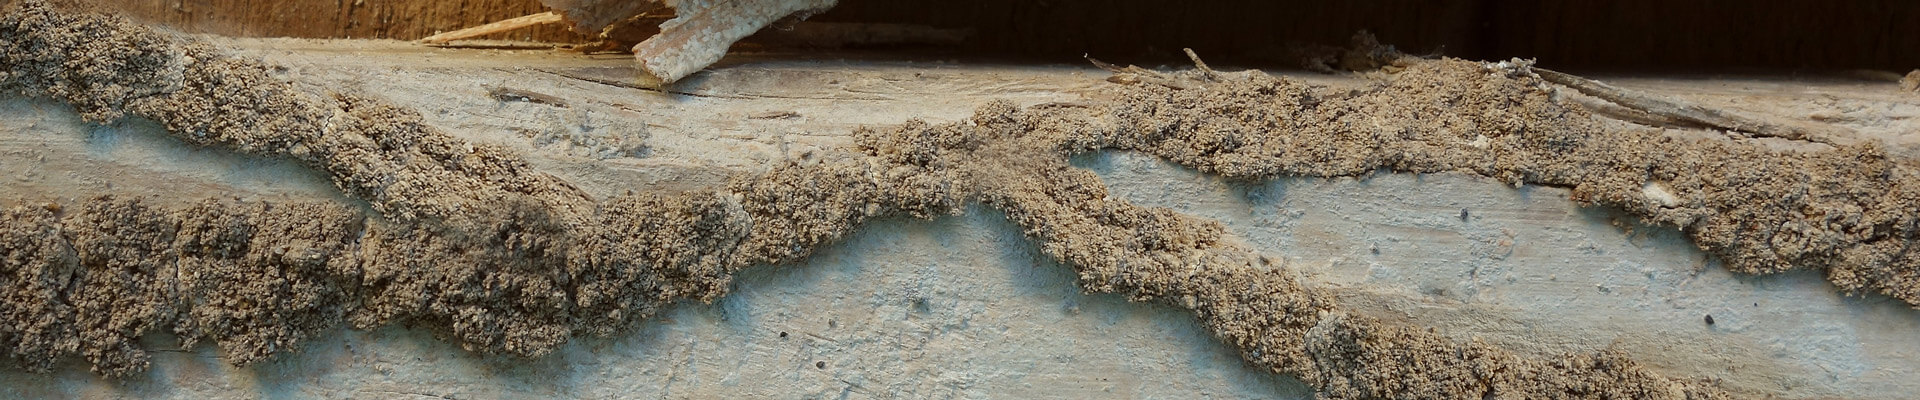 termite-mud-tunnel